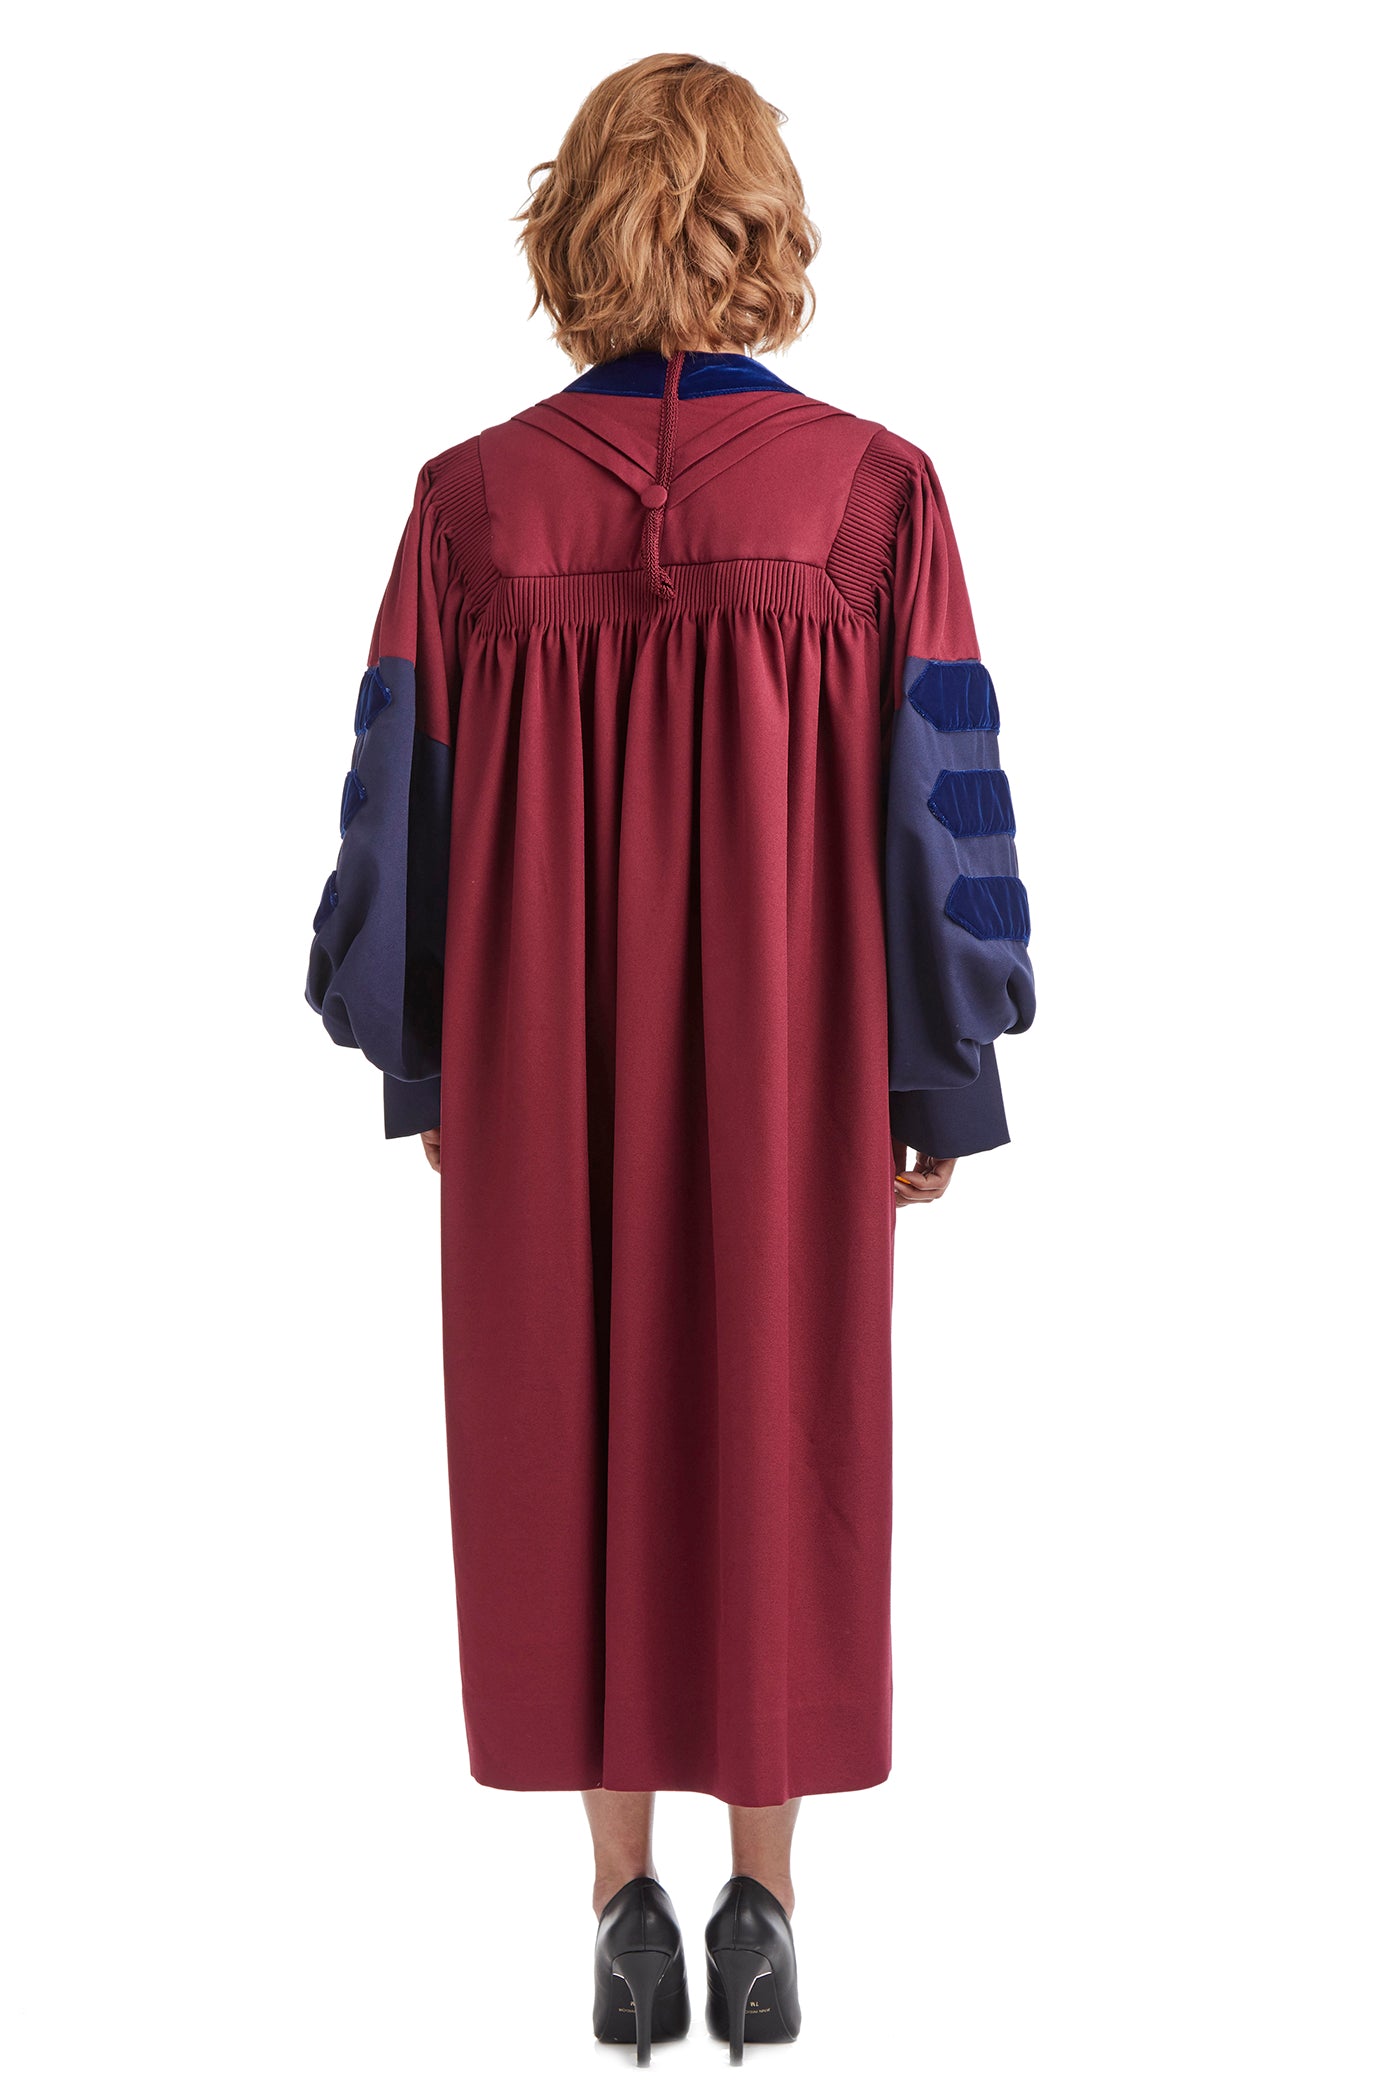 penn state phd graduation gown